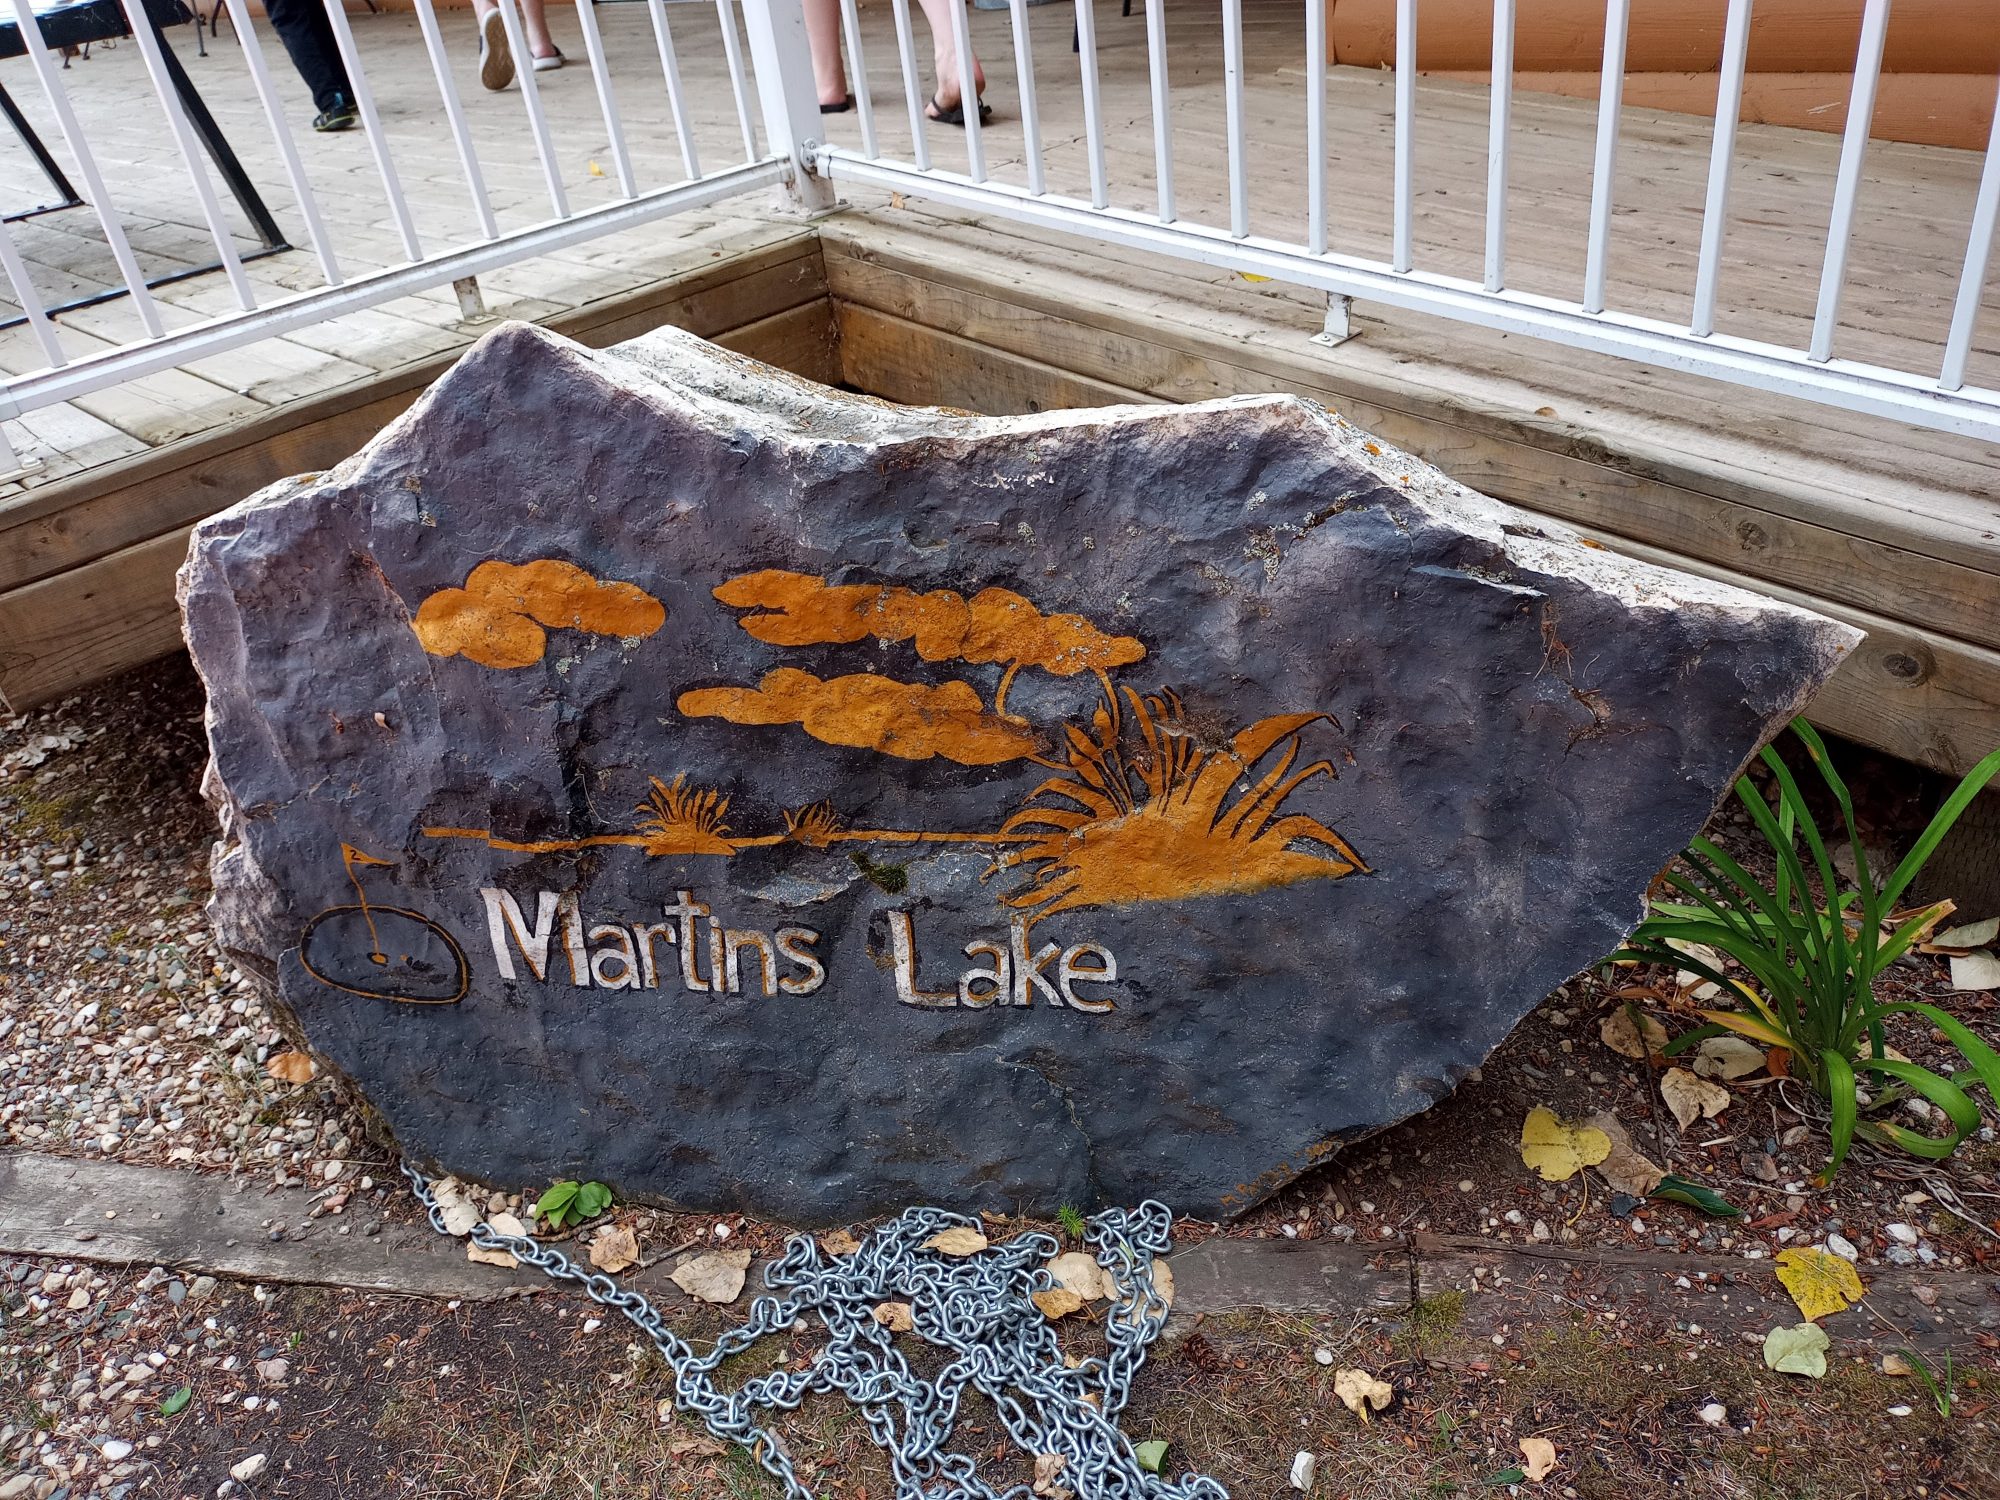 Martins Lake Regional Park